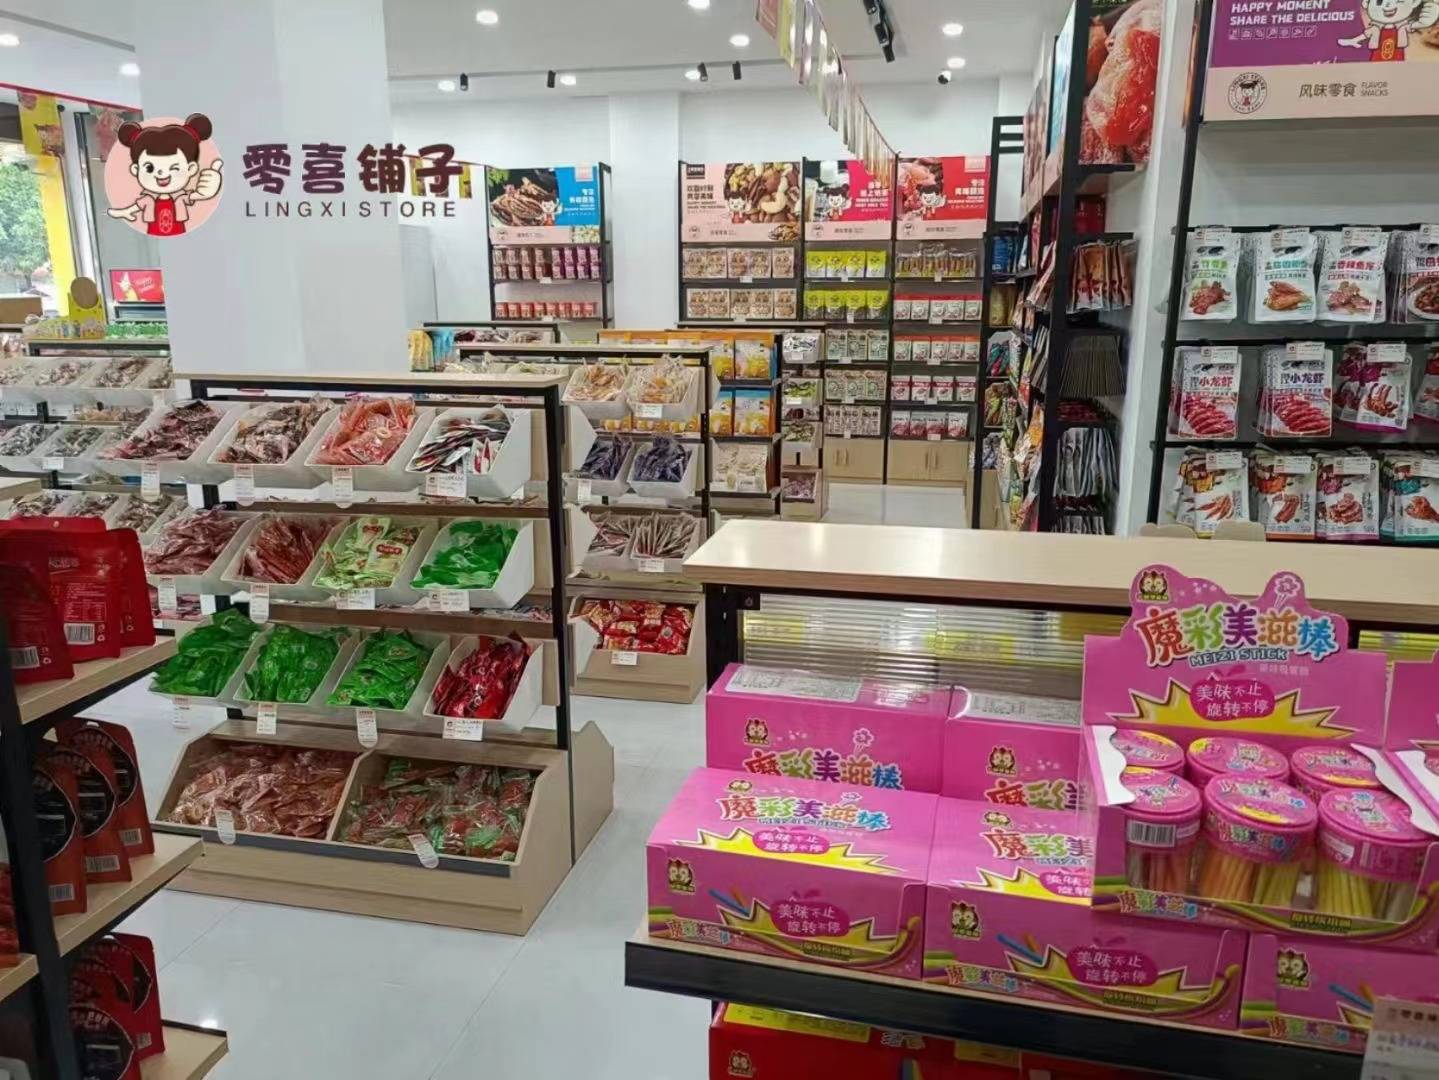 量贩零食大热,广州零嘻嘻食品打造零食狂欢节